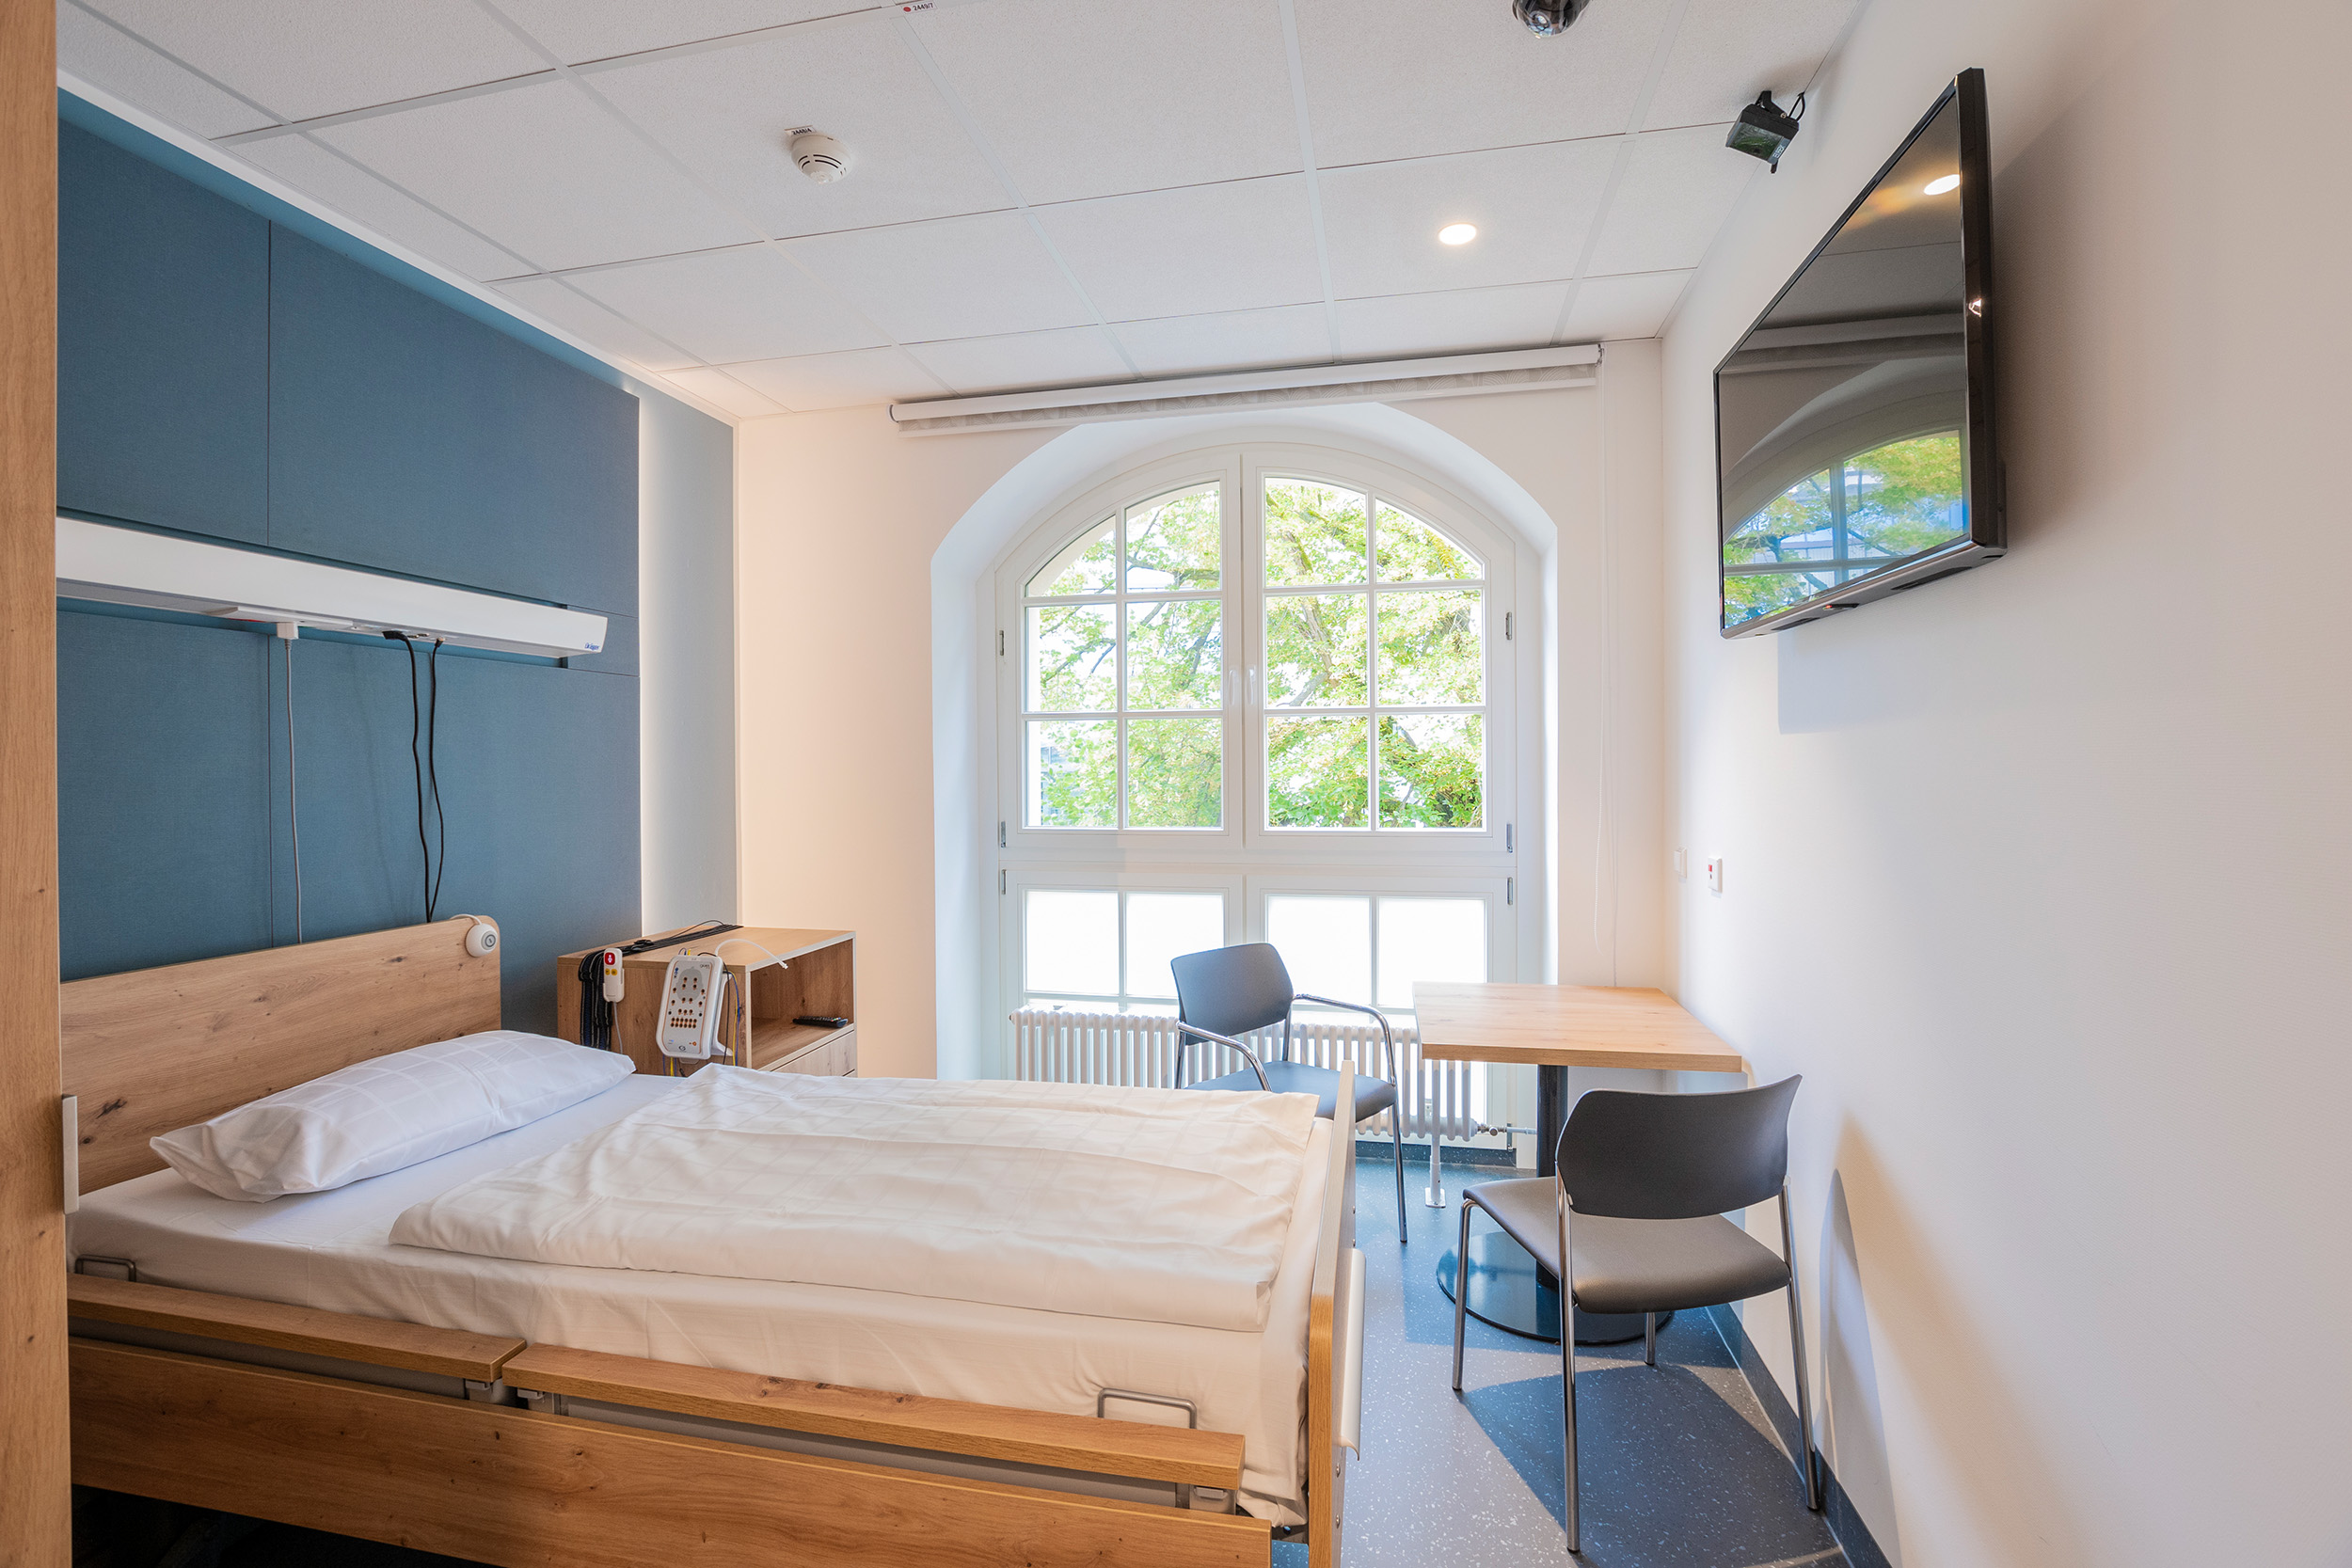 Patientenzimmer mit geräumigem Bett, großen Fenstern und Fernseher